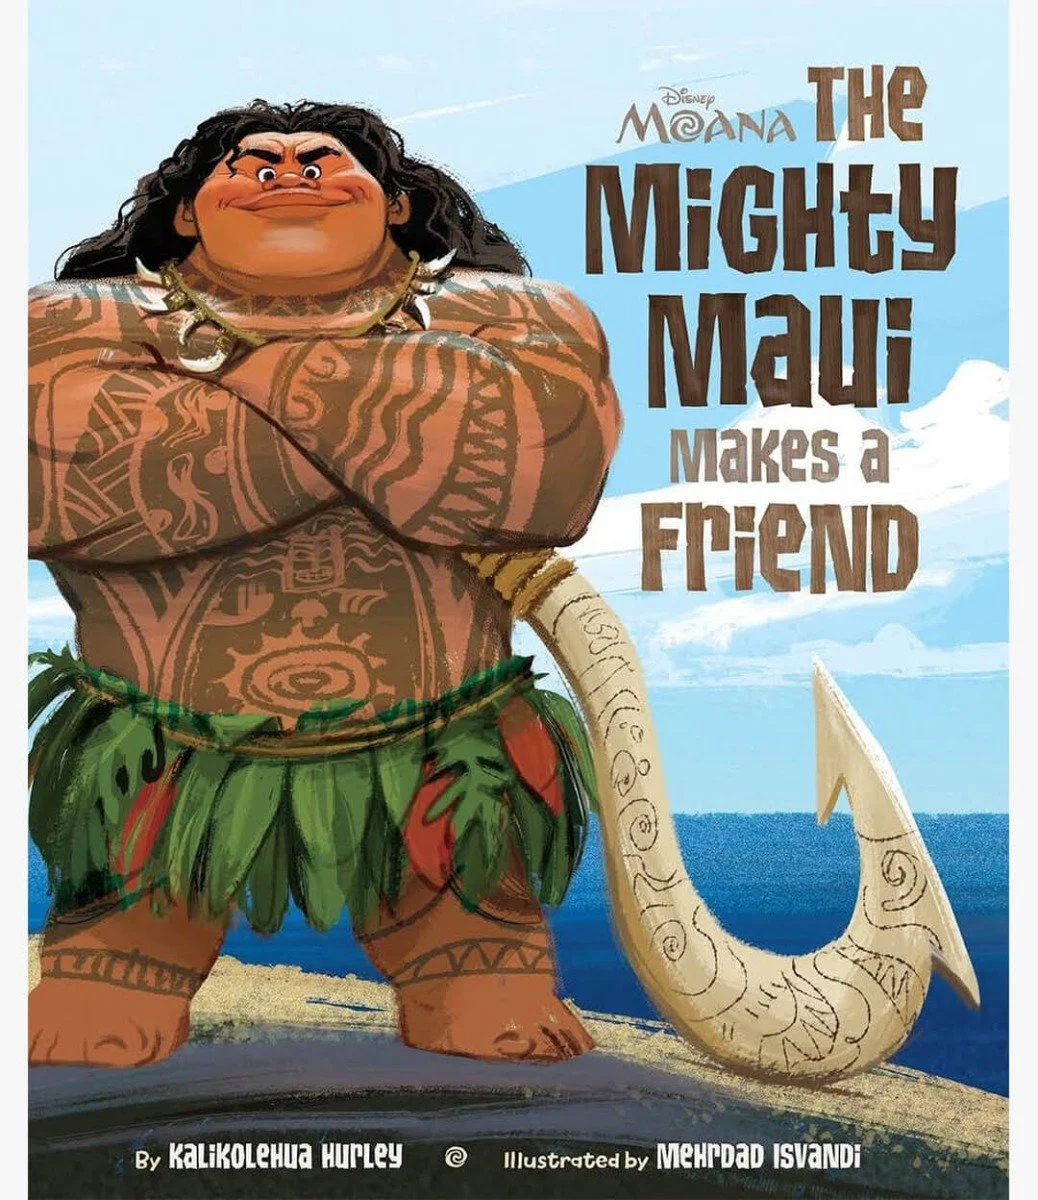 Moana the Mighty Maui Makes a Friend